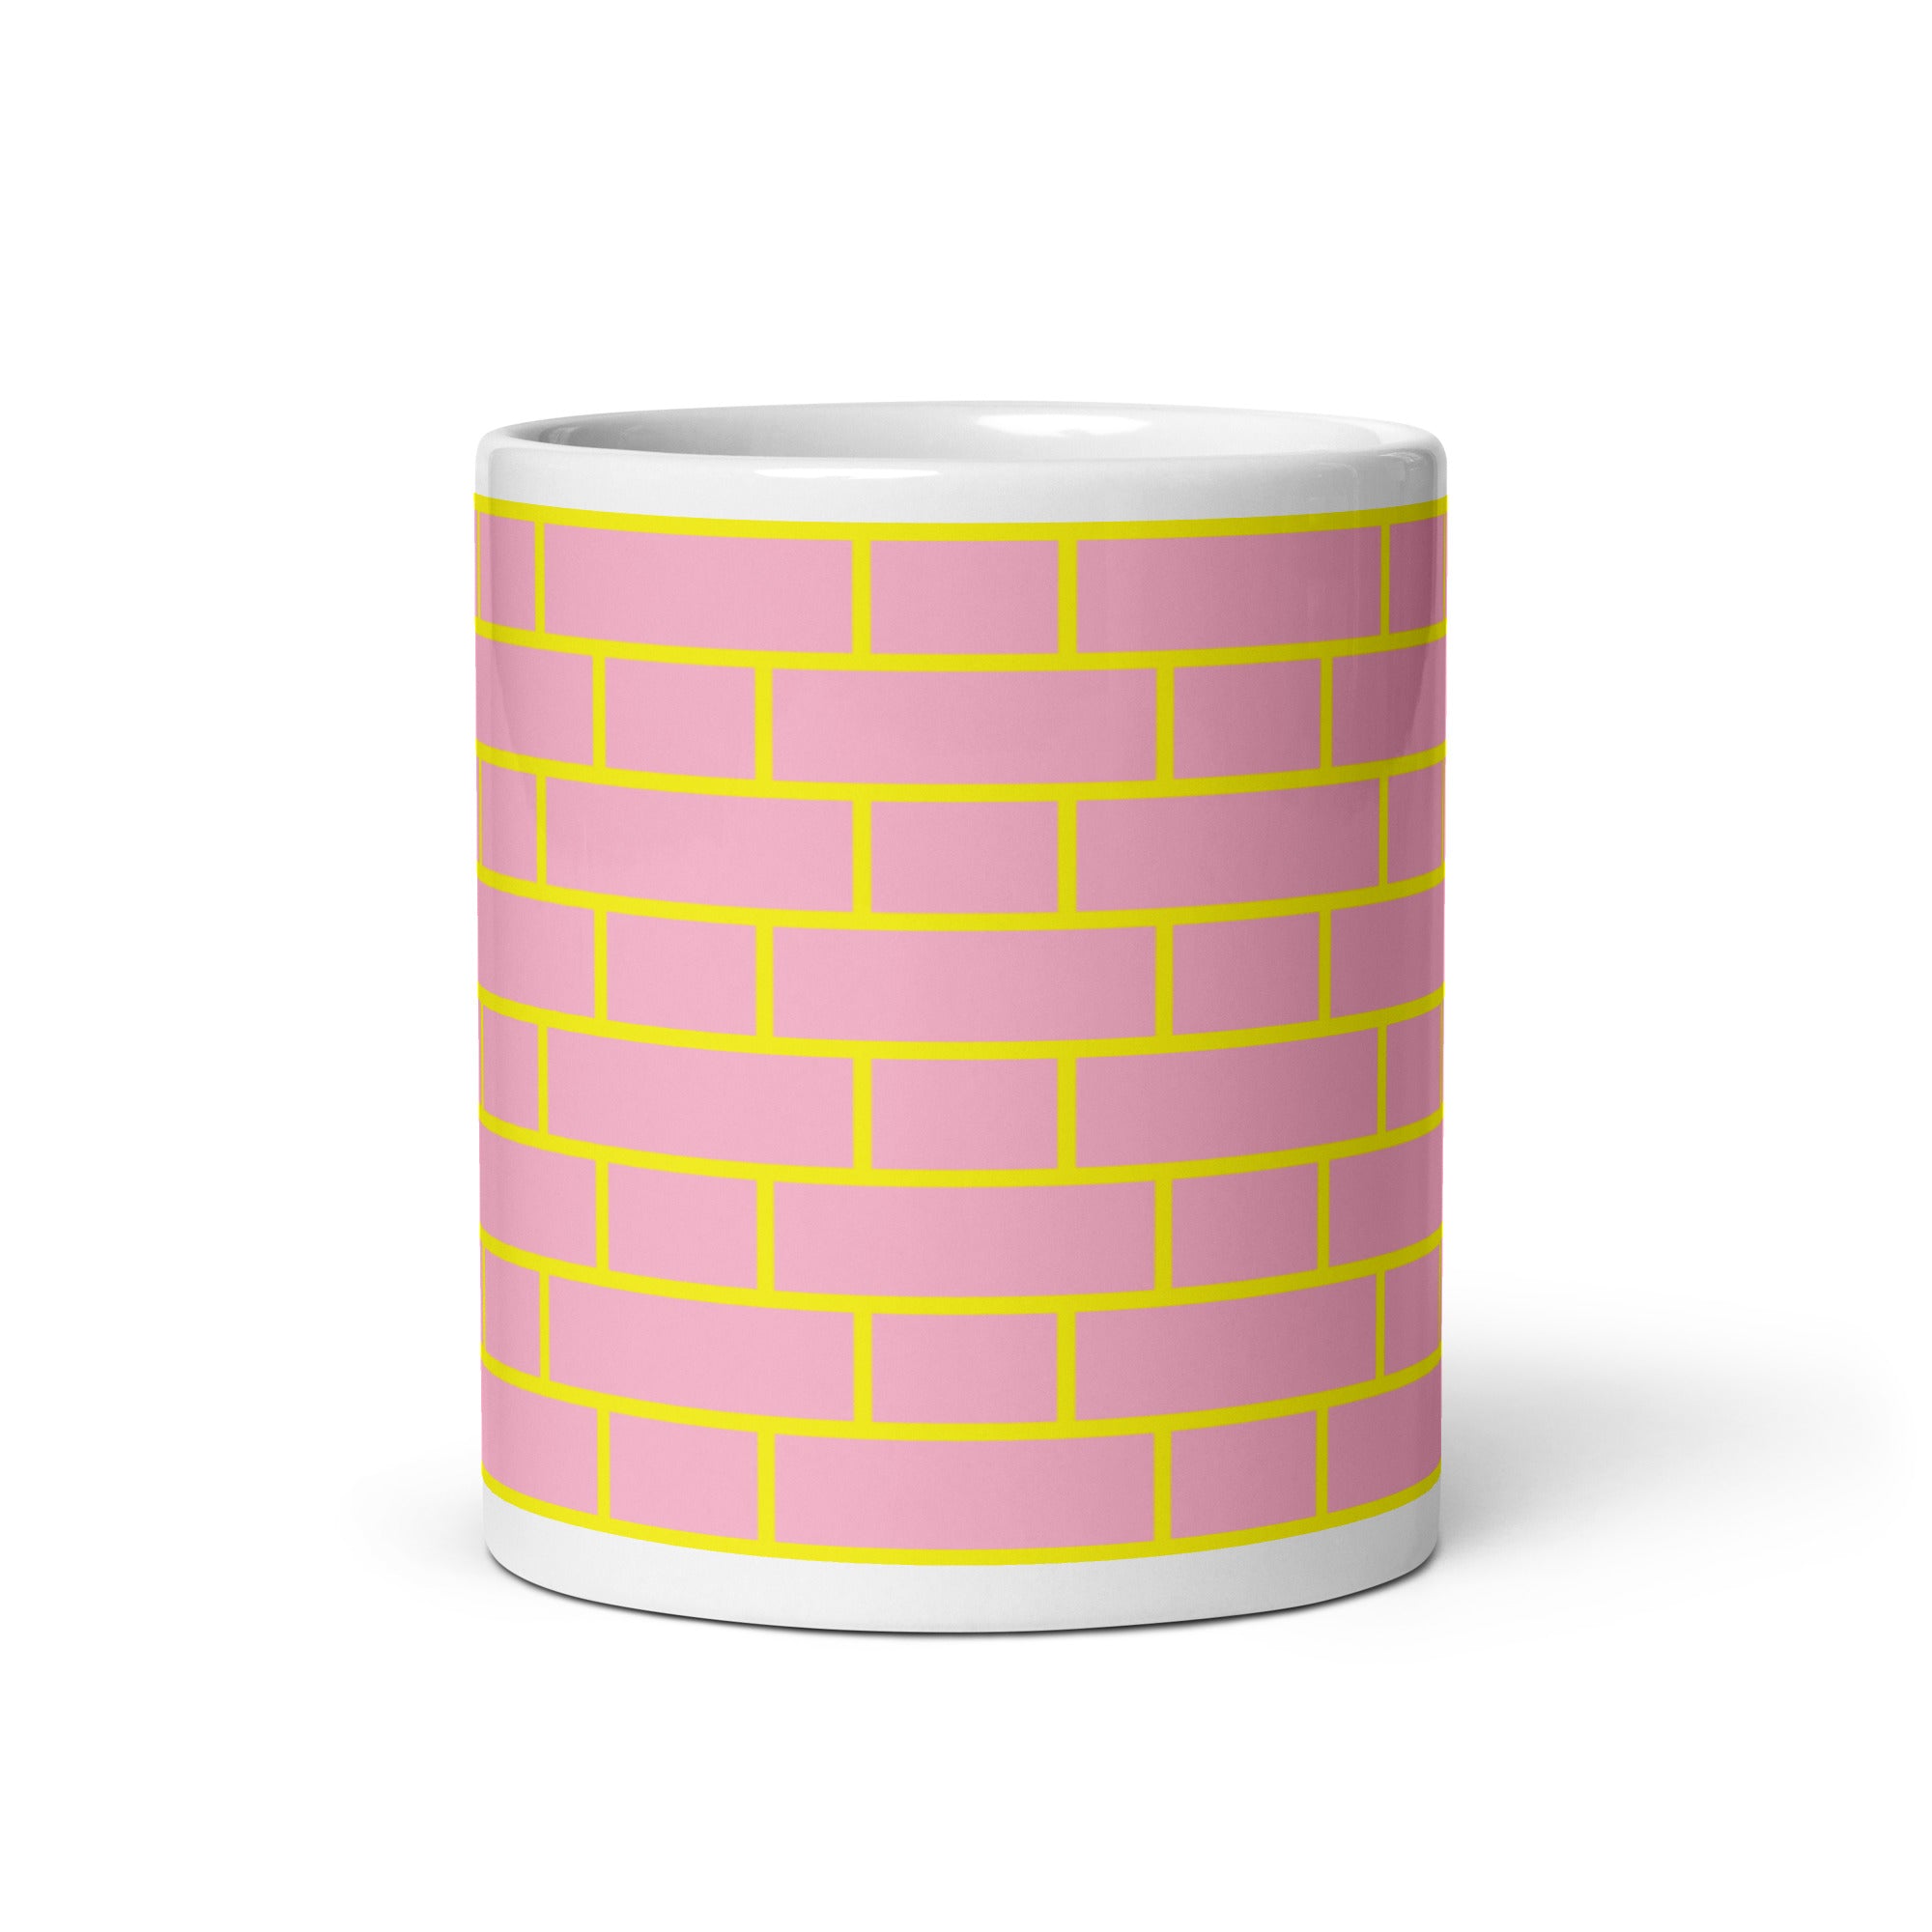 Flemish Bond Pink & Yellow Hatch Mugs